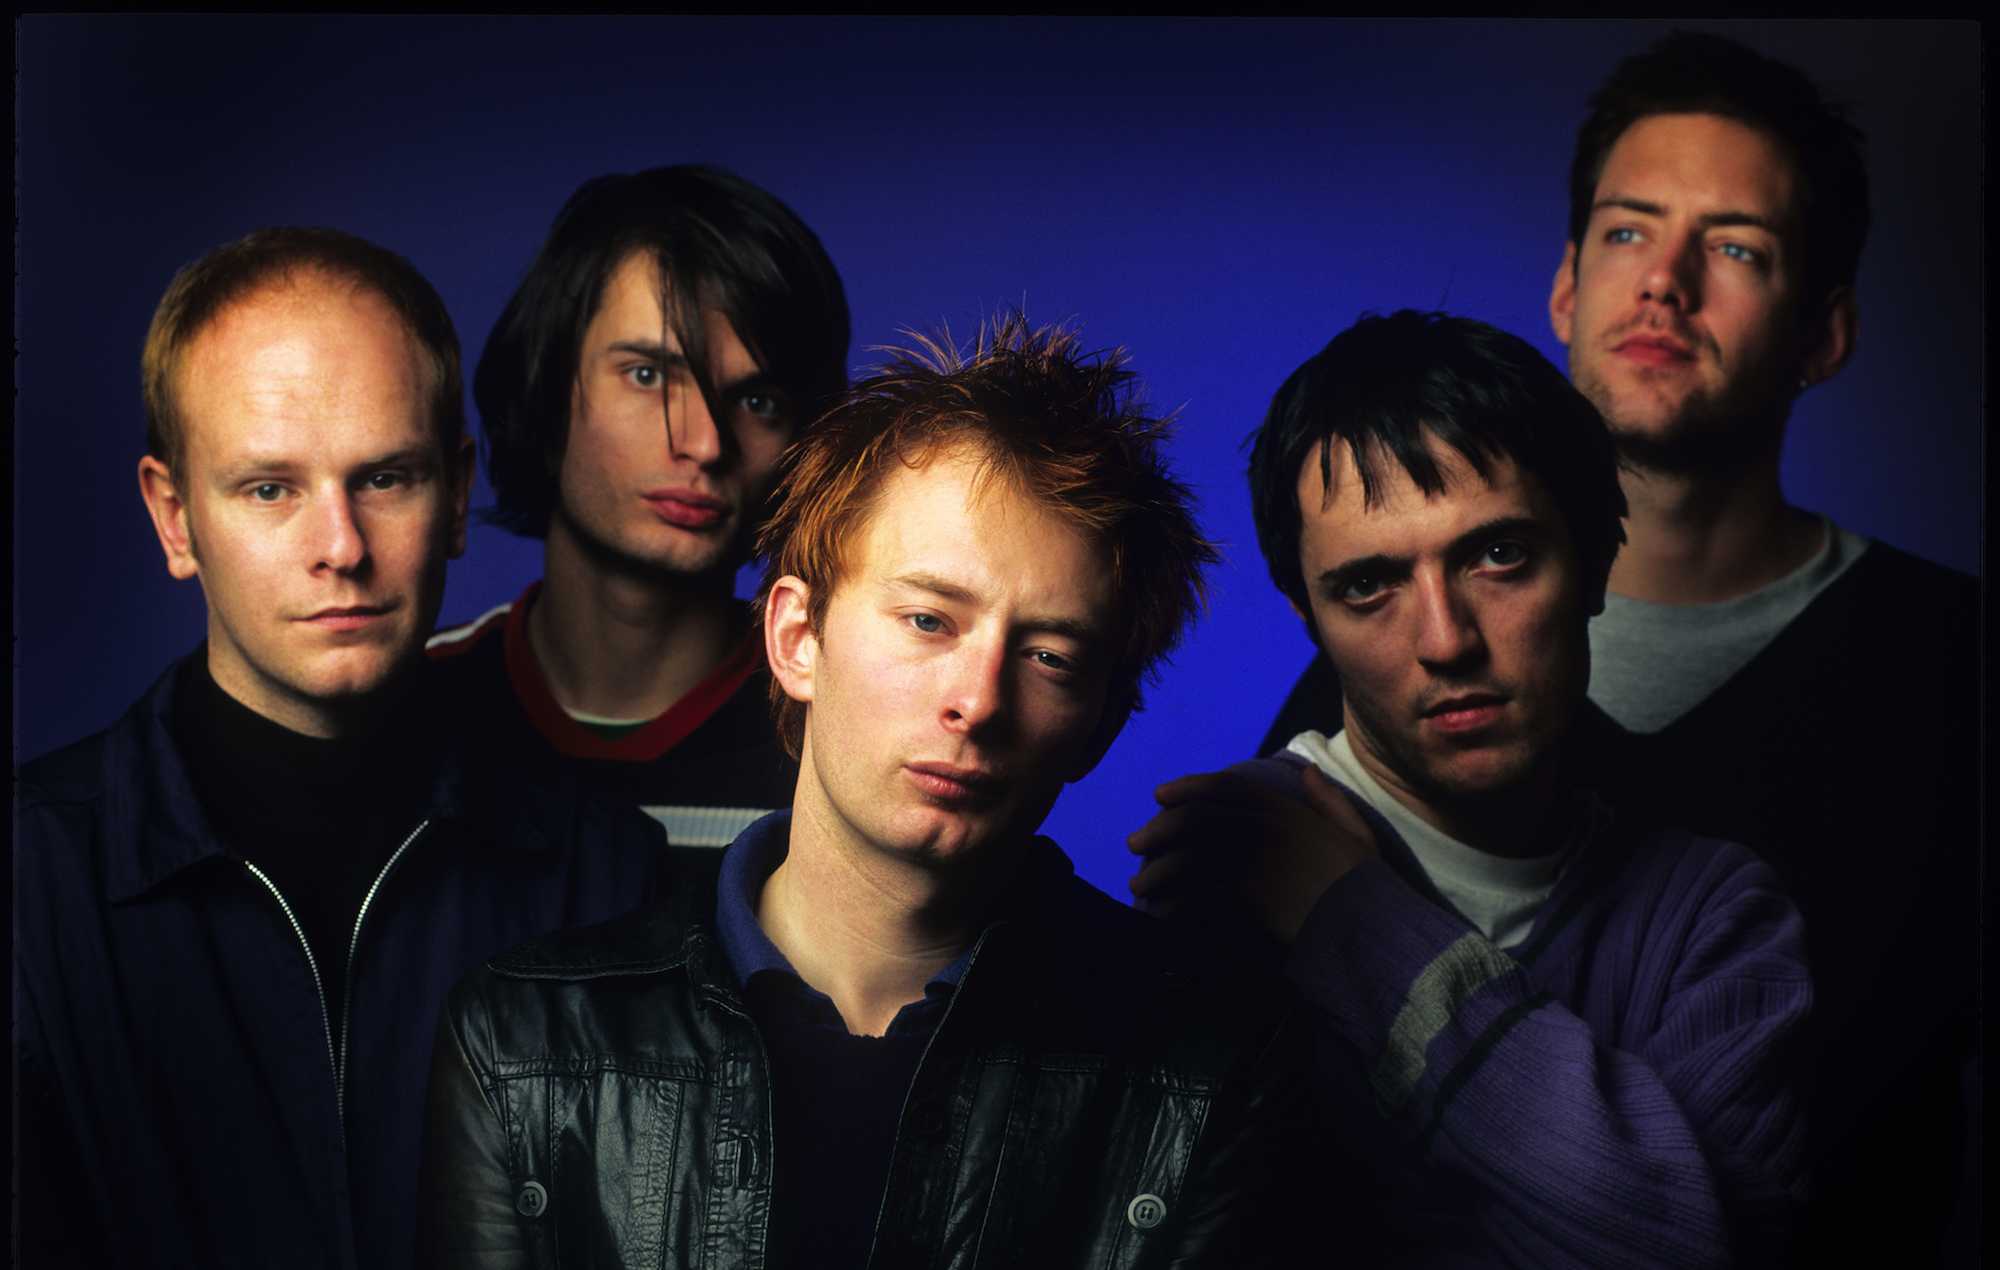 Лучшие песни Radiohead  только хиты Radiohead  лучшие песни, главные хиты: полный список треков, названия, год выпуска, клипы слушать, смотреть онлайн бесплатно Хиты Radiohead, лучшее